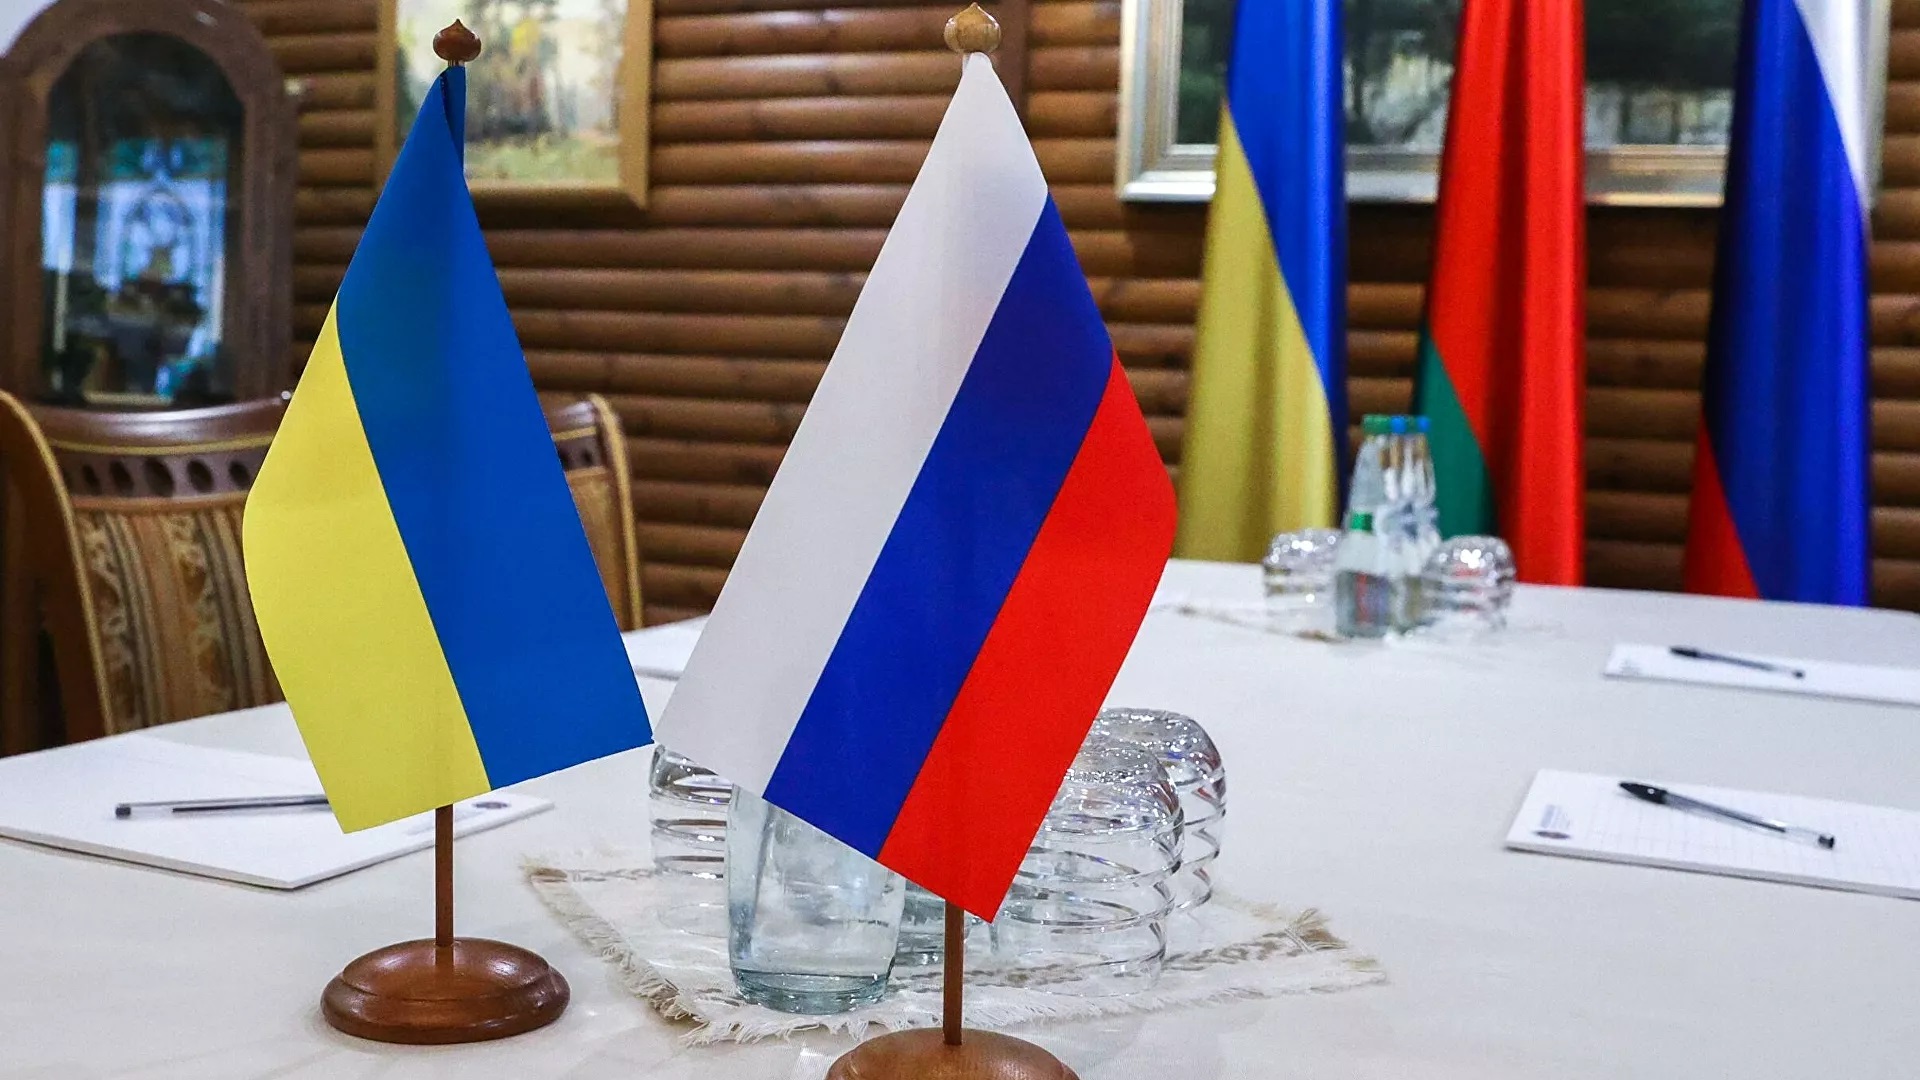 Ukraine Russia flags